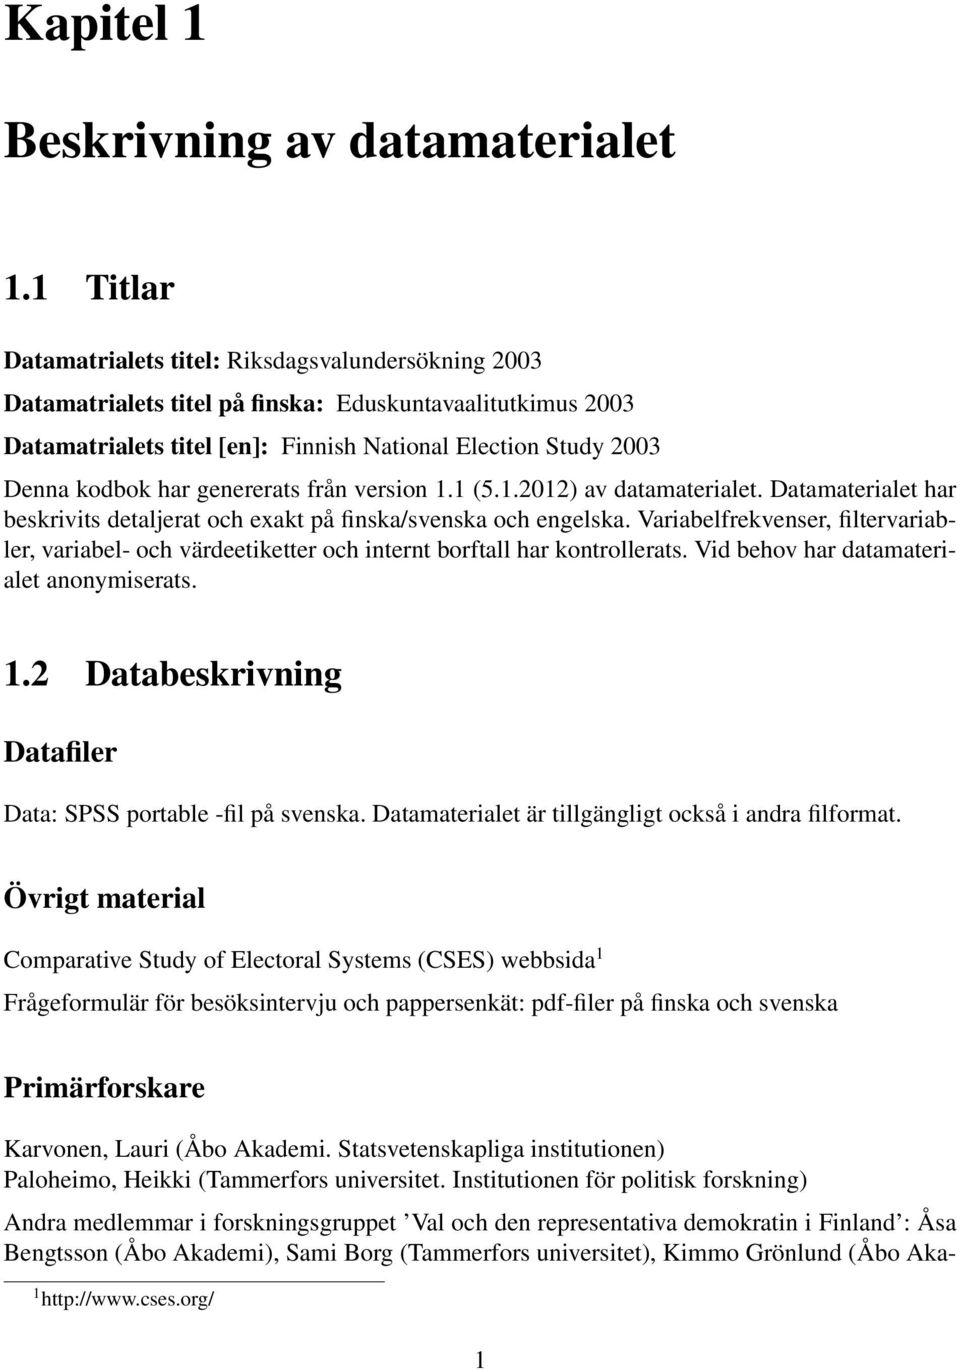 har genererats från version 1.1 (5.1.2012) av datamaterialet. Datamaterialet har beskrivits detaljerat och exakt på finska/svenska och engelska.